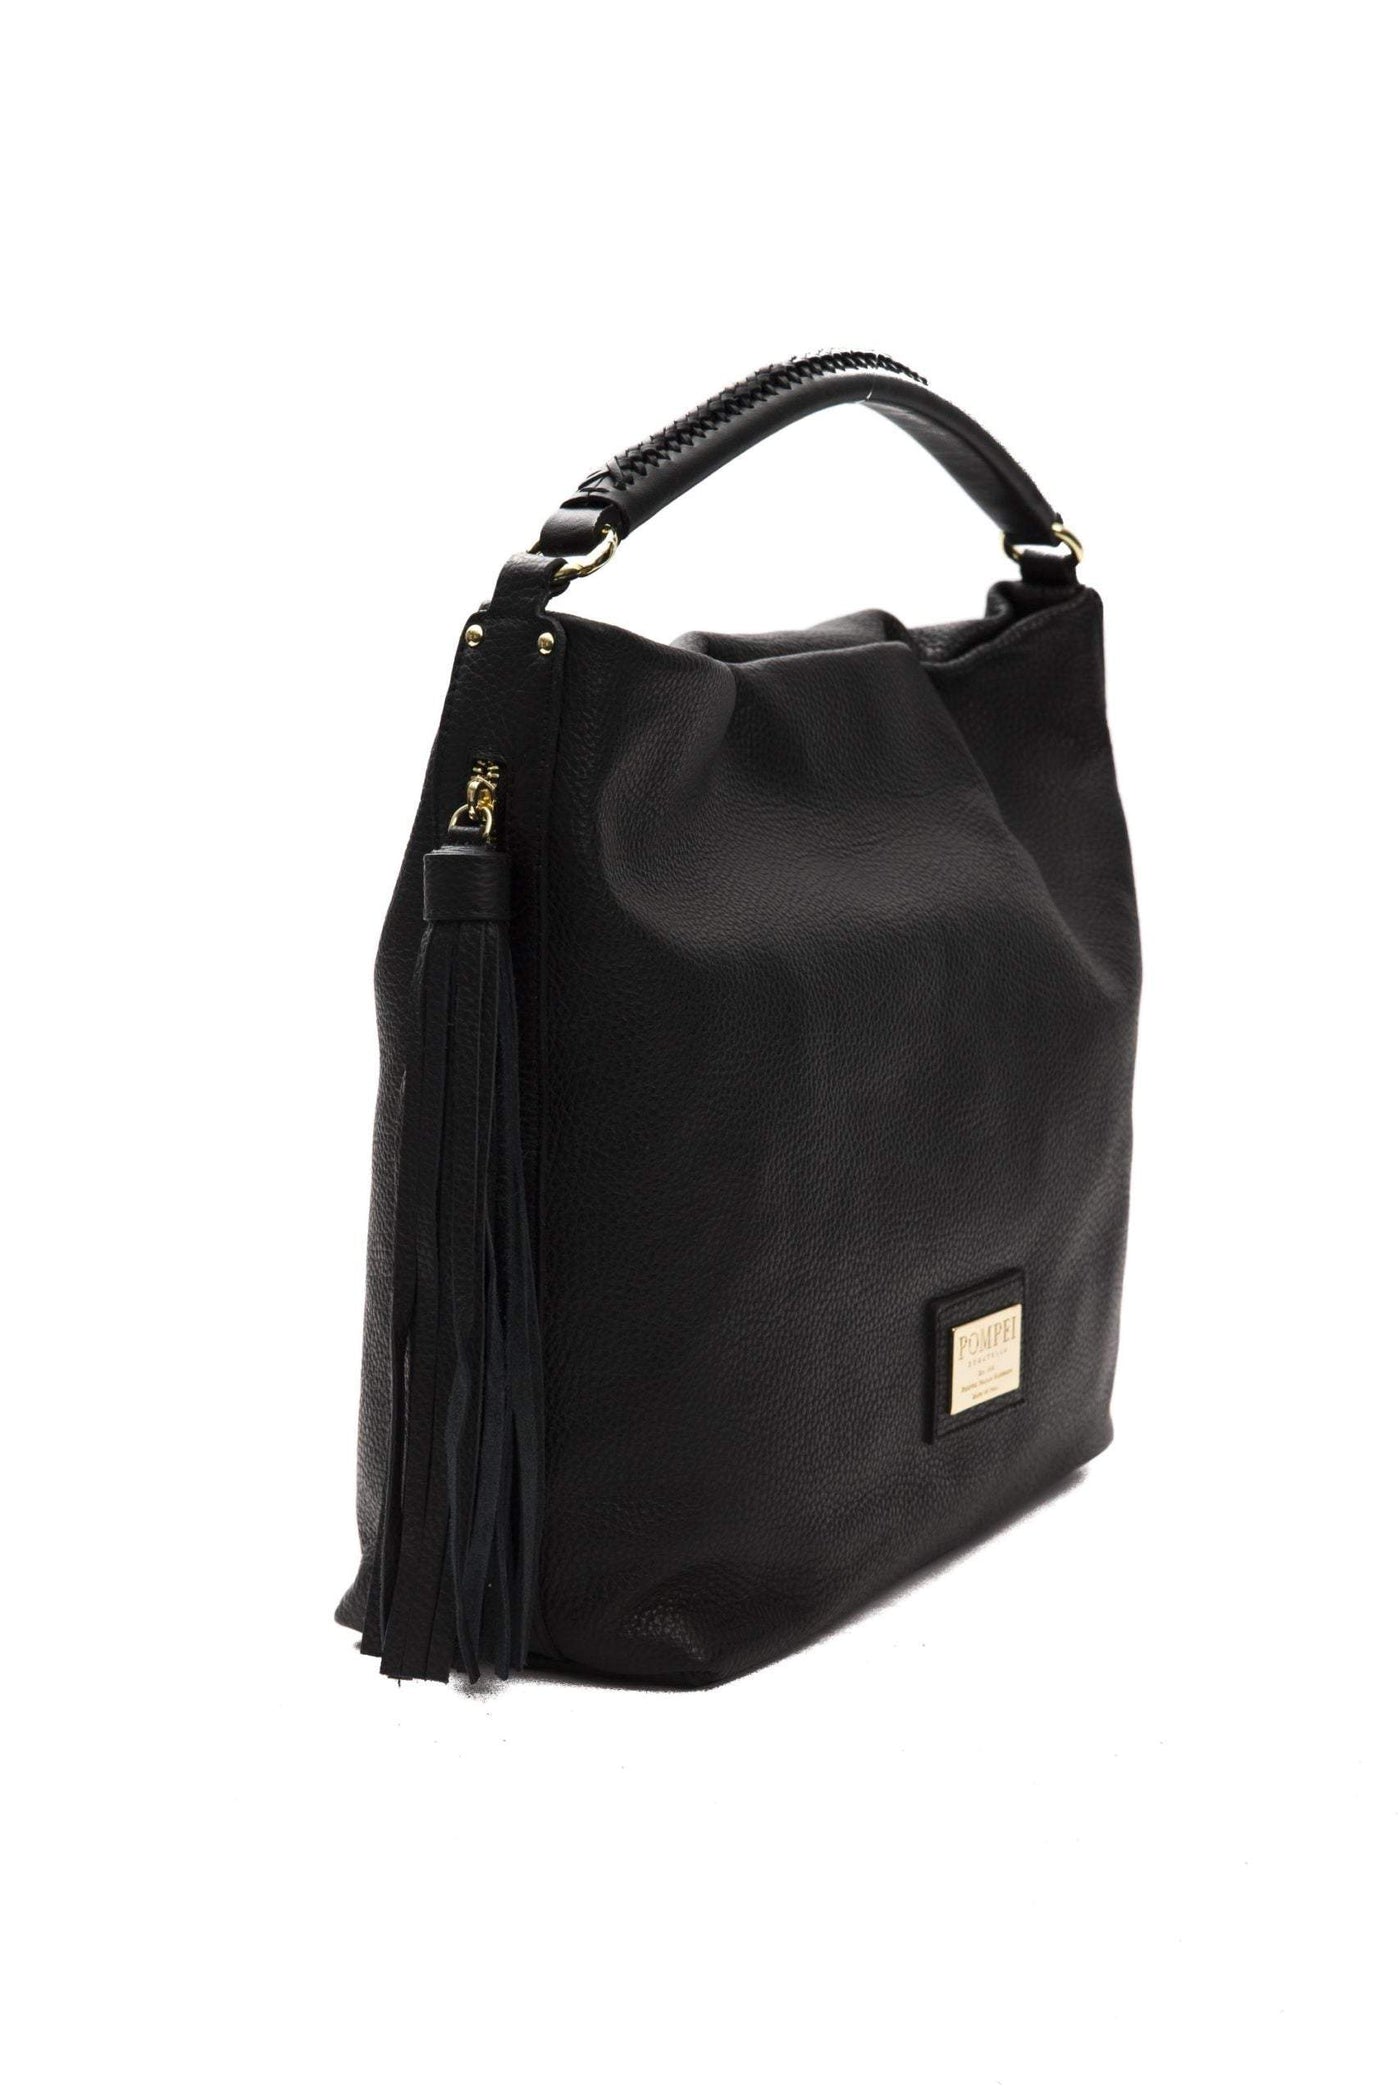 Pompei Donatella Nero Black Shoulder Bag #women, Black, feed-color-Black, feed-gender-adult, feed-gender-female, Pompei Donatella, Shoulder Bags - Women - Bags at SEYMAYKA